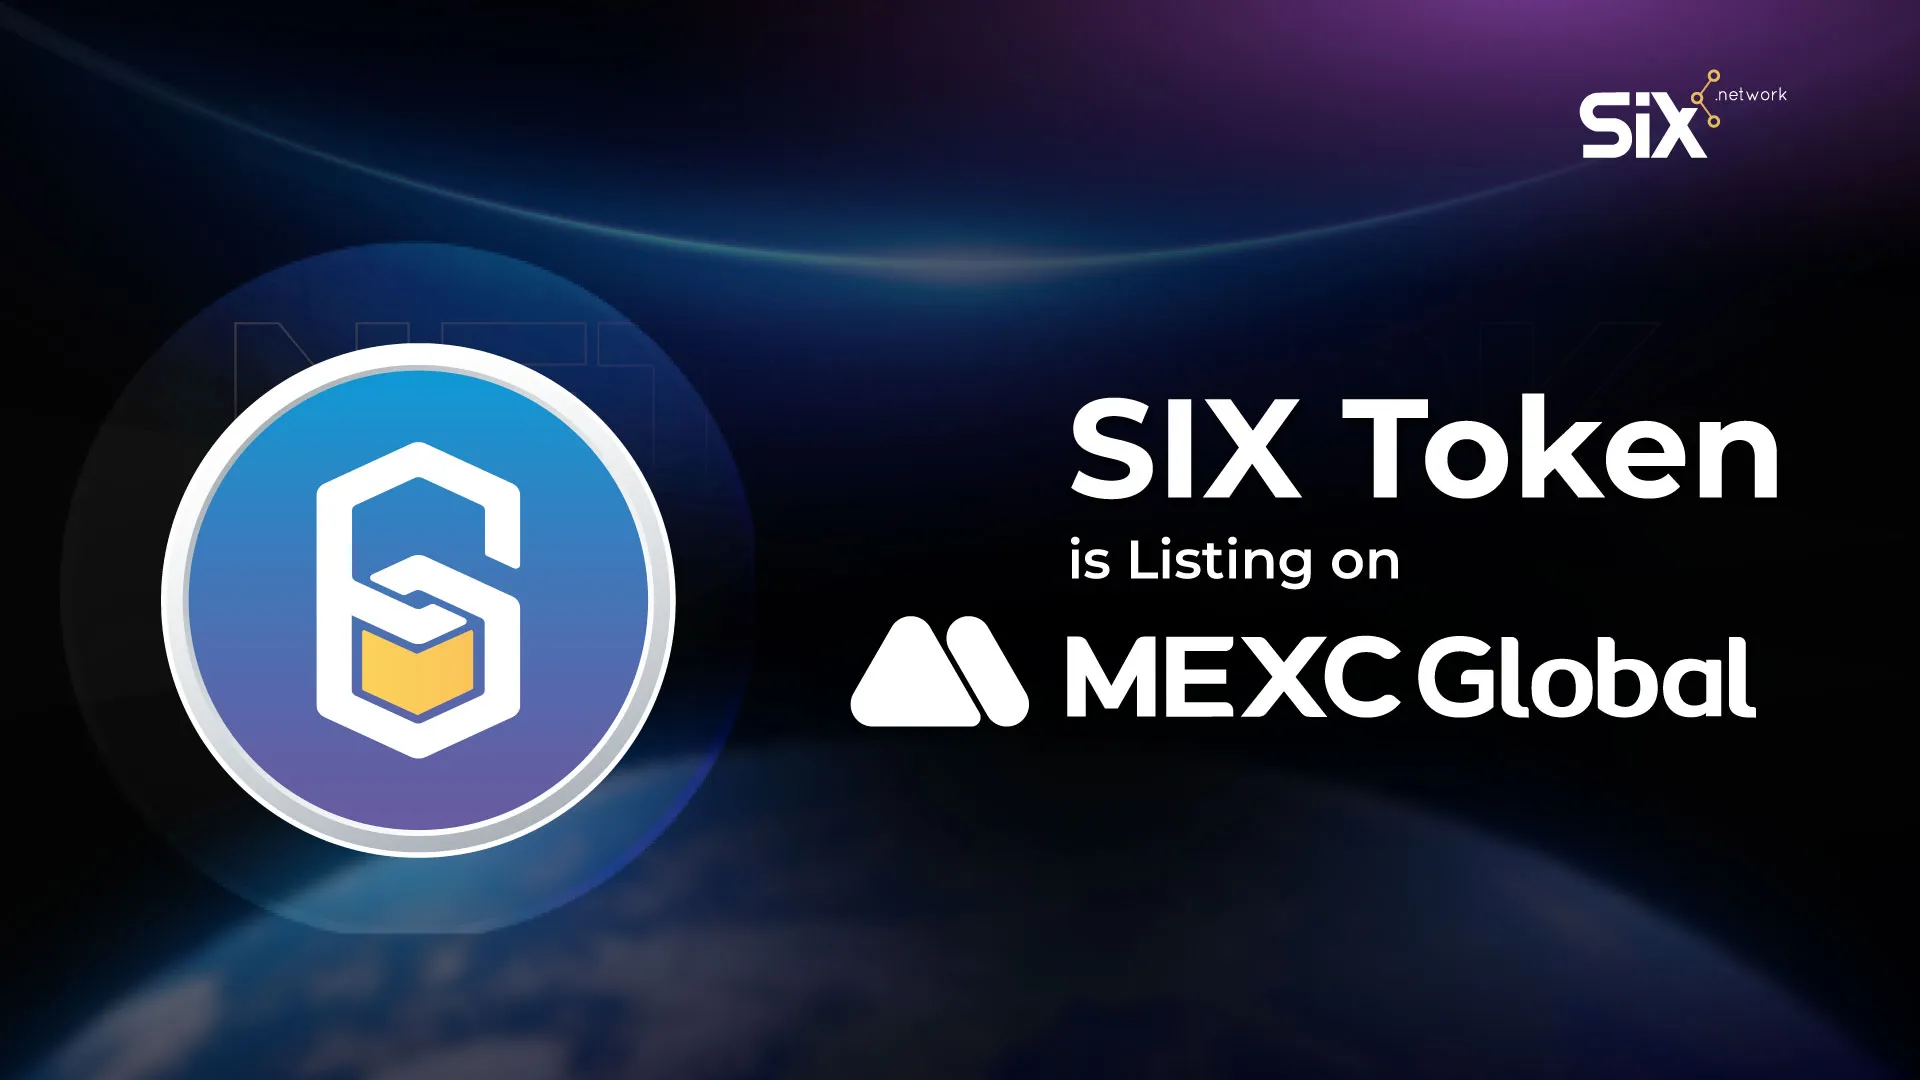 เหรียญ SIX ถูกลิสต์บน MEXC Global แพลตฟอร์มซื้อขายคริปโต Top 20 ของโลก